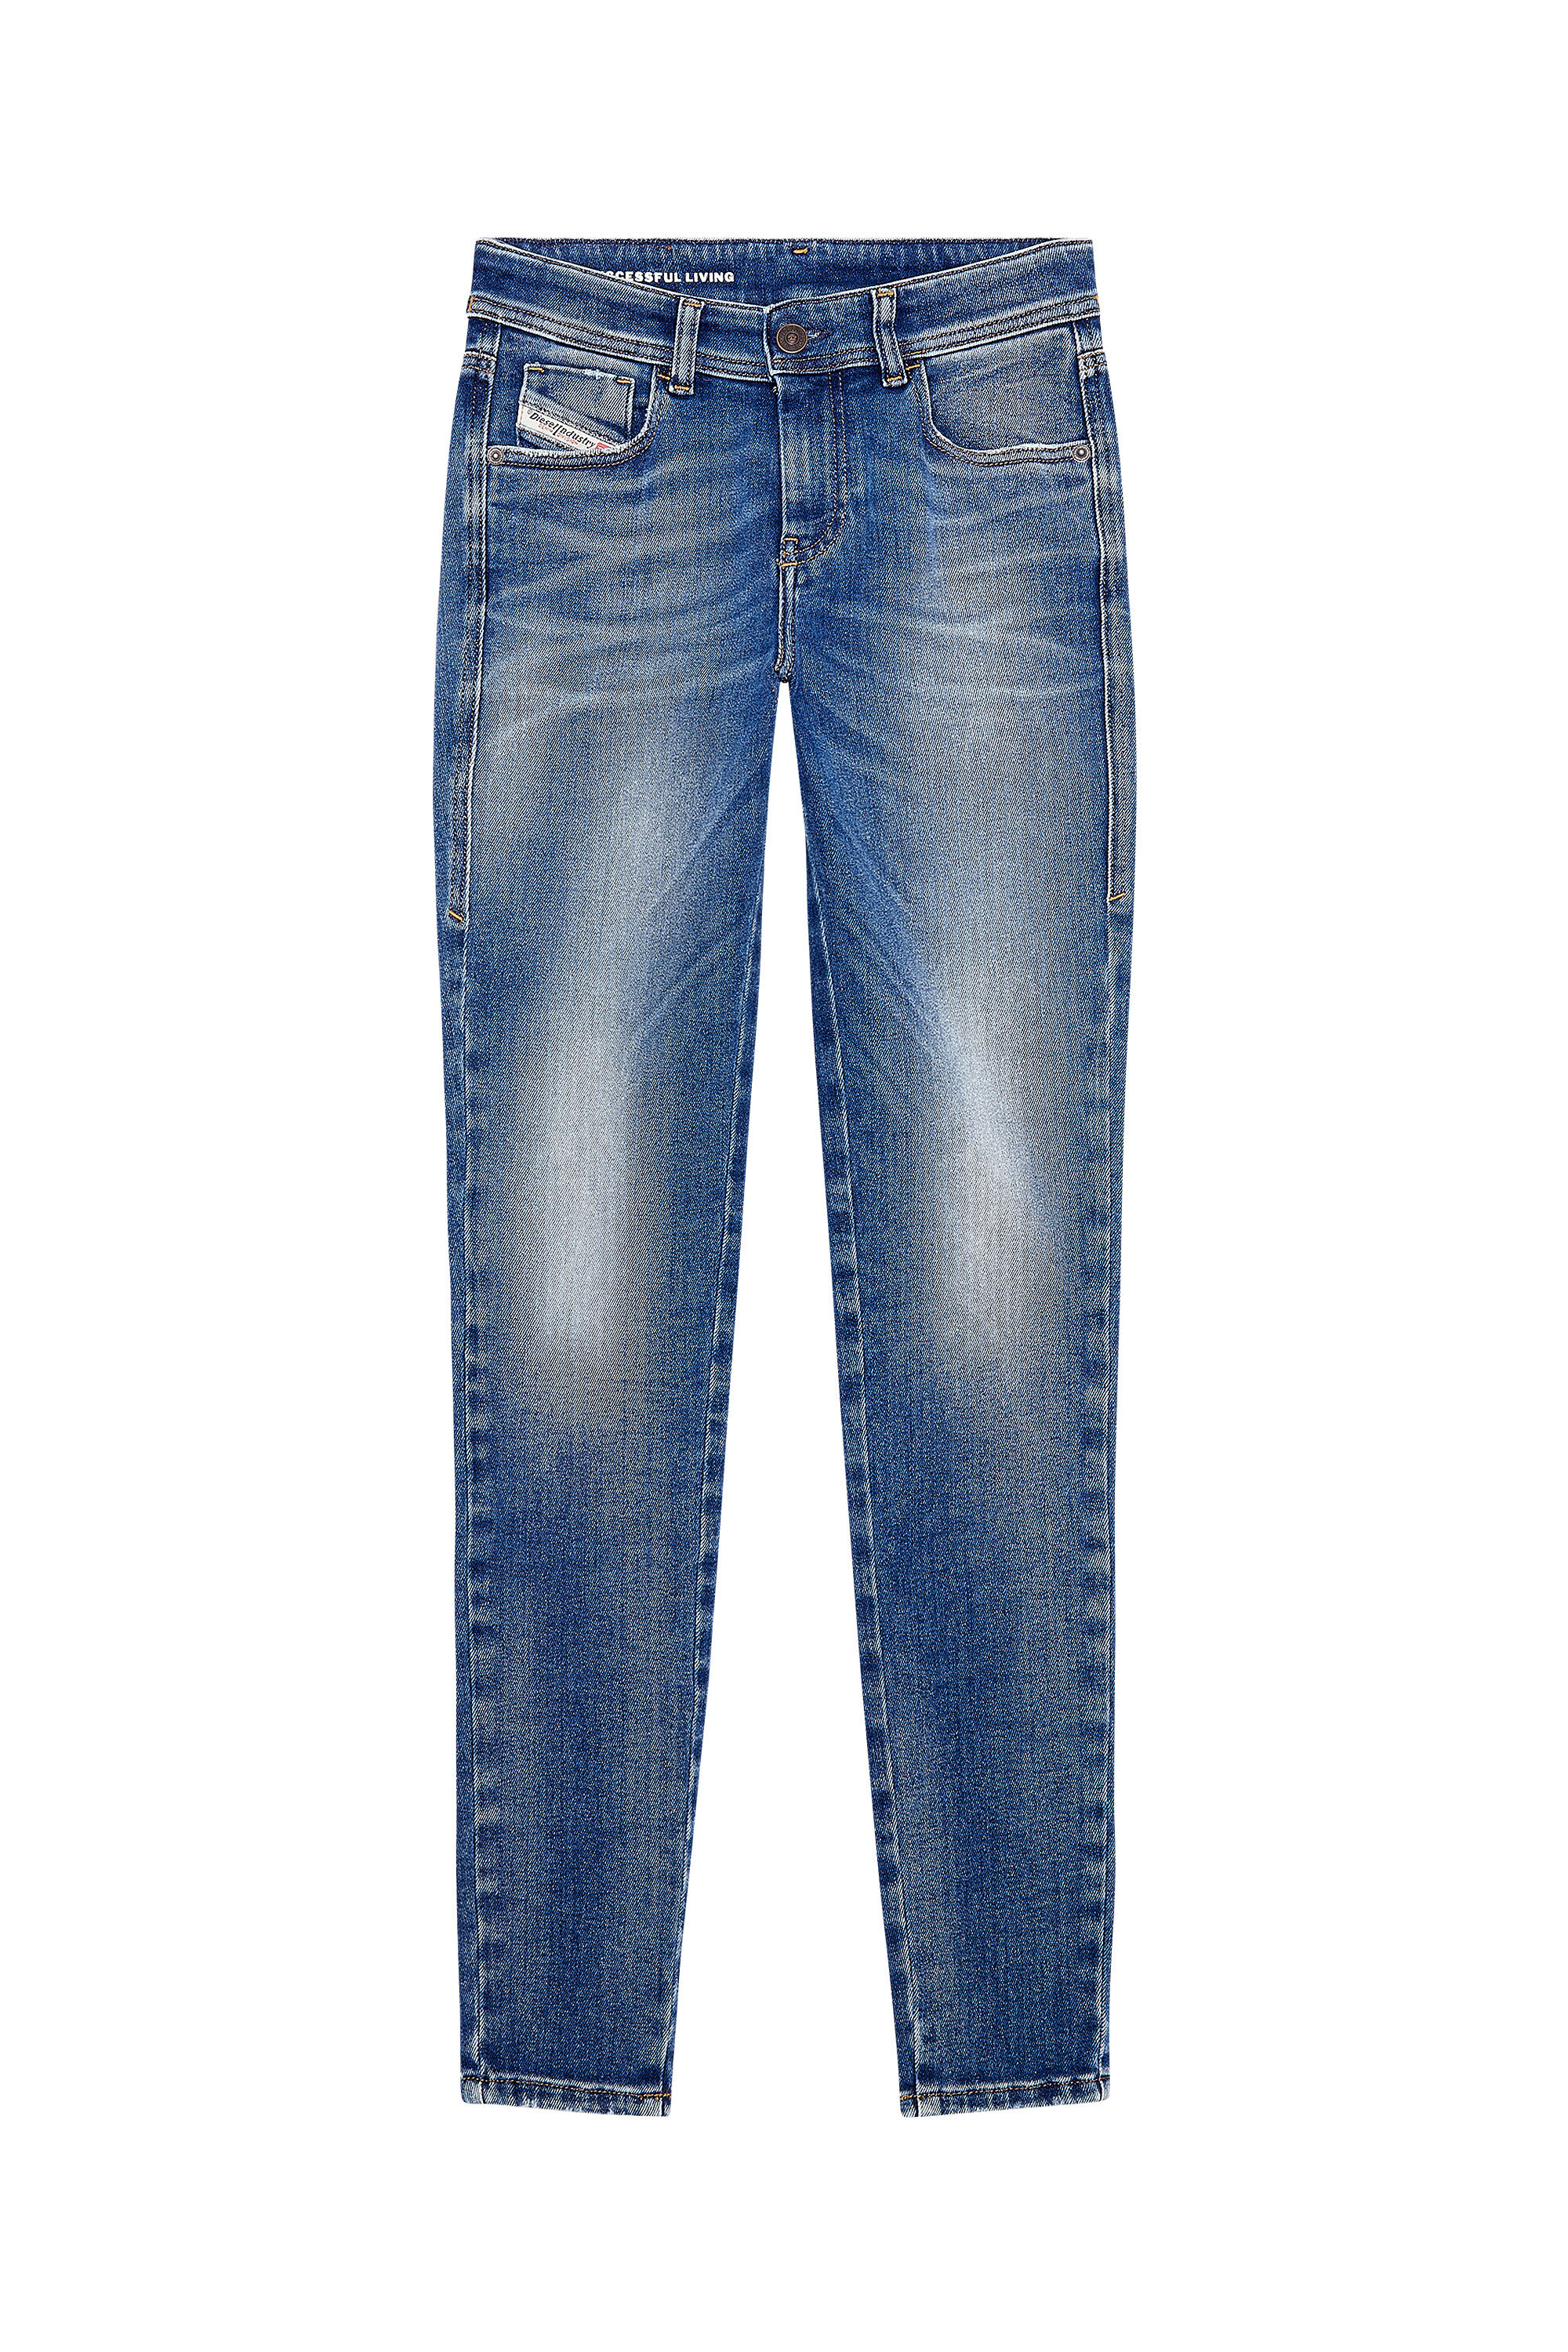 Diesel - Woman Super skinny Jeans 2017 Slandy 09H90, Medium blue - Image 2